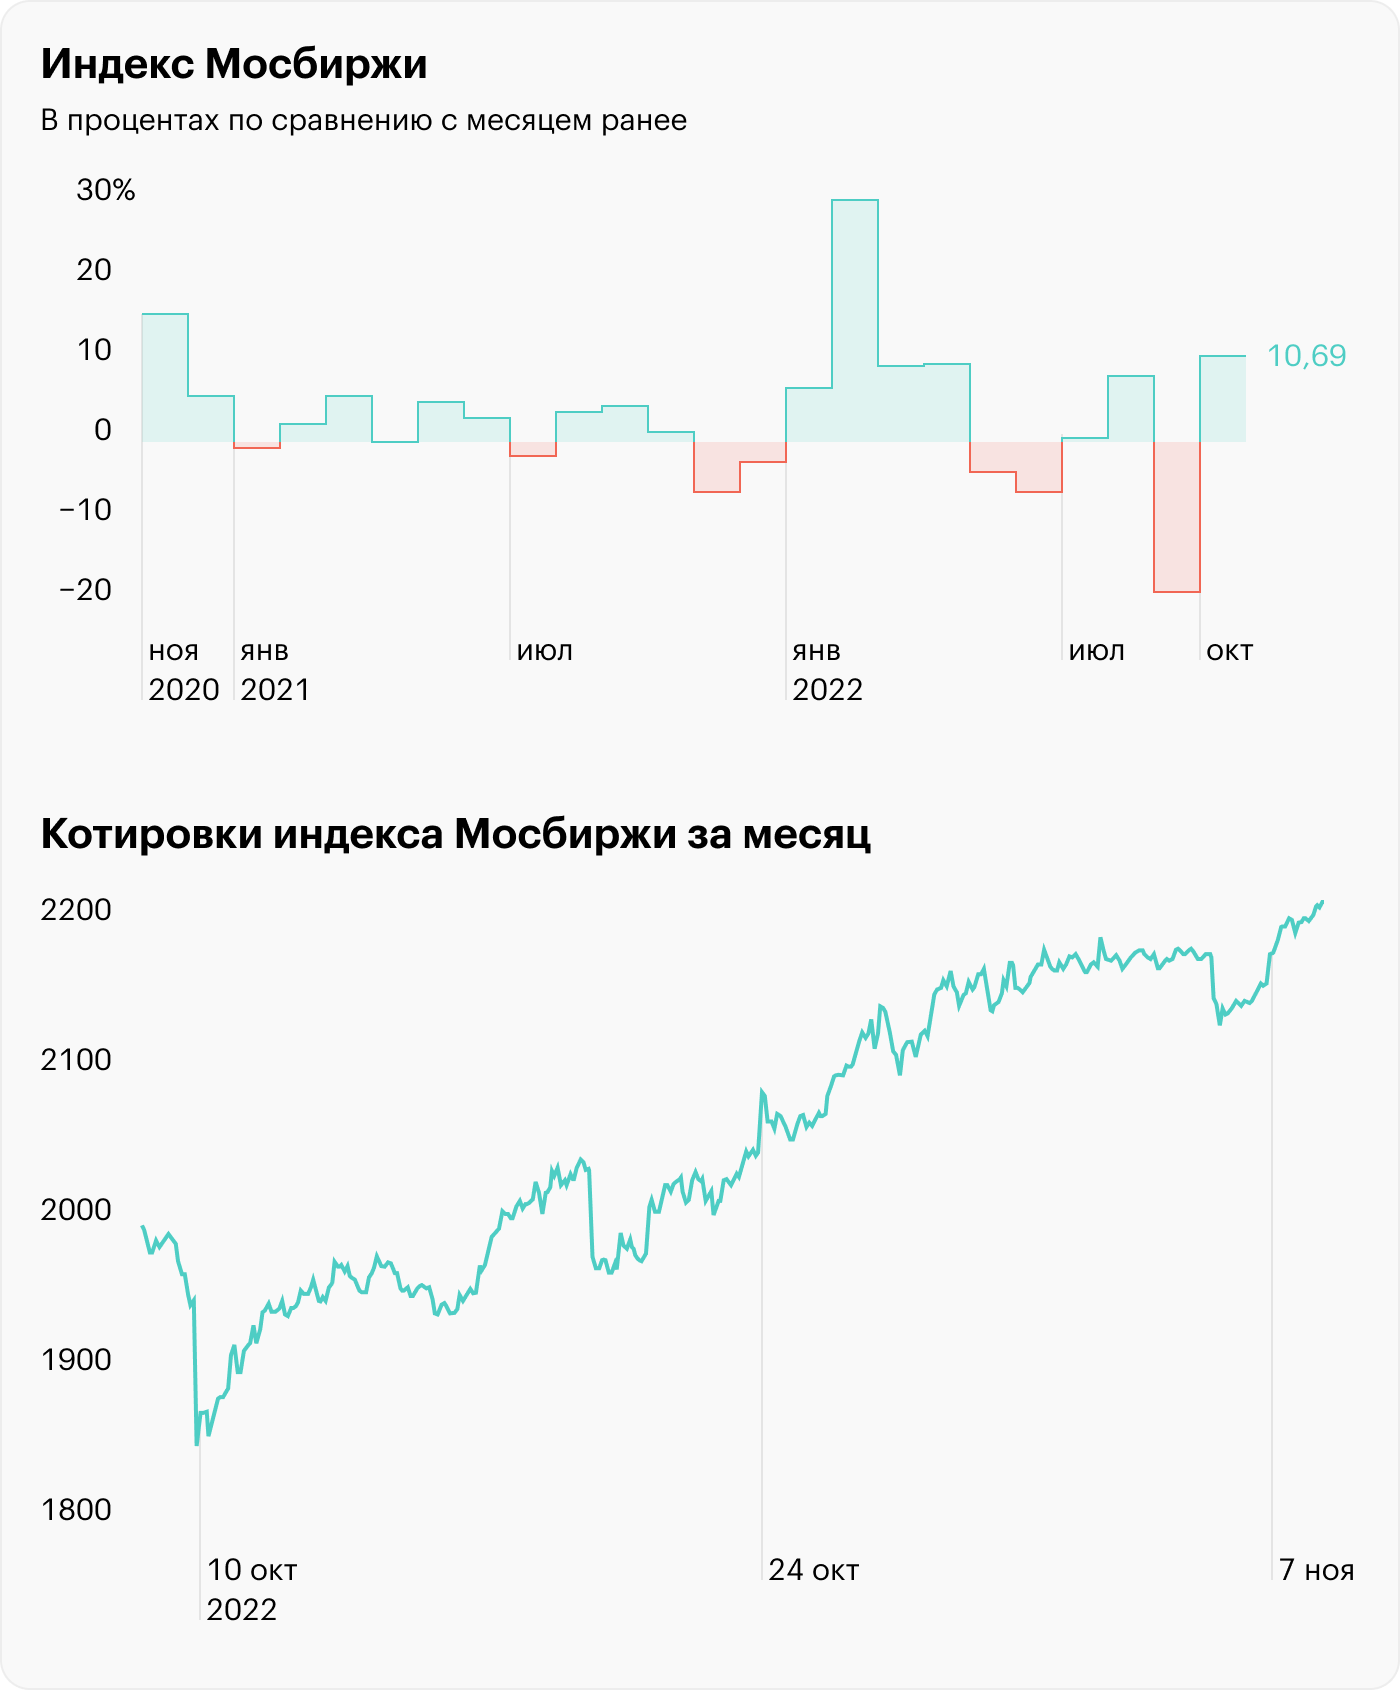 Индекс Мосбиржи за октябрь вырос более чем на 10%